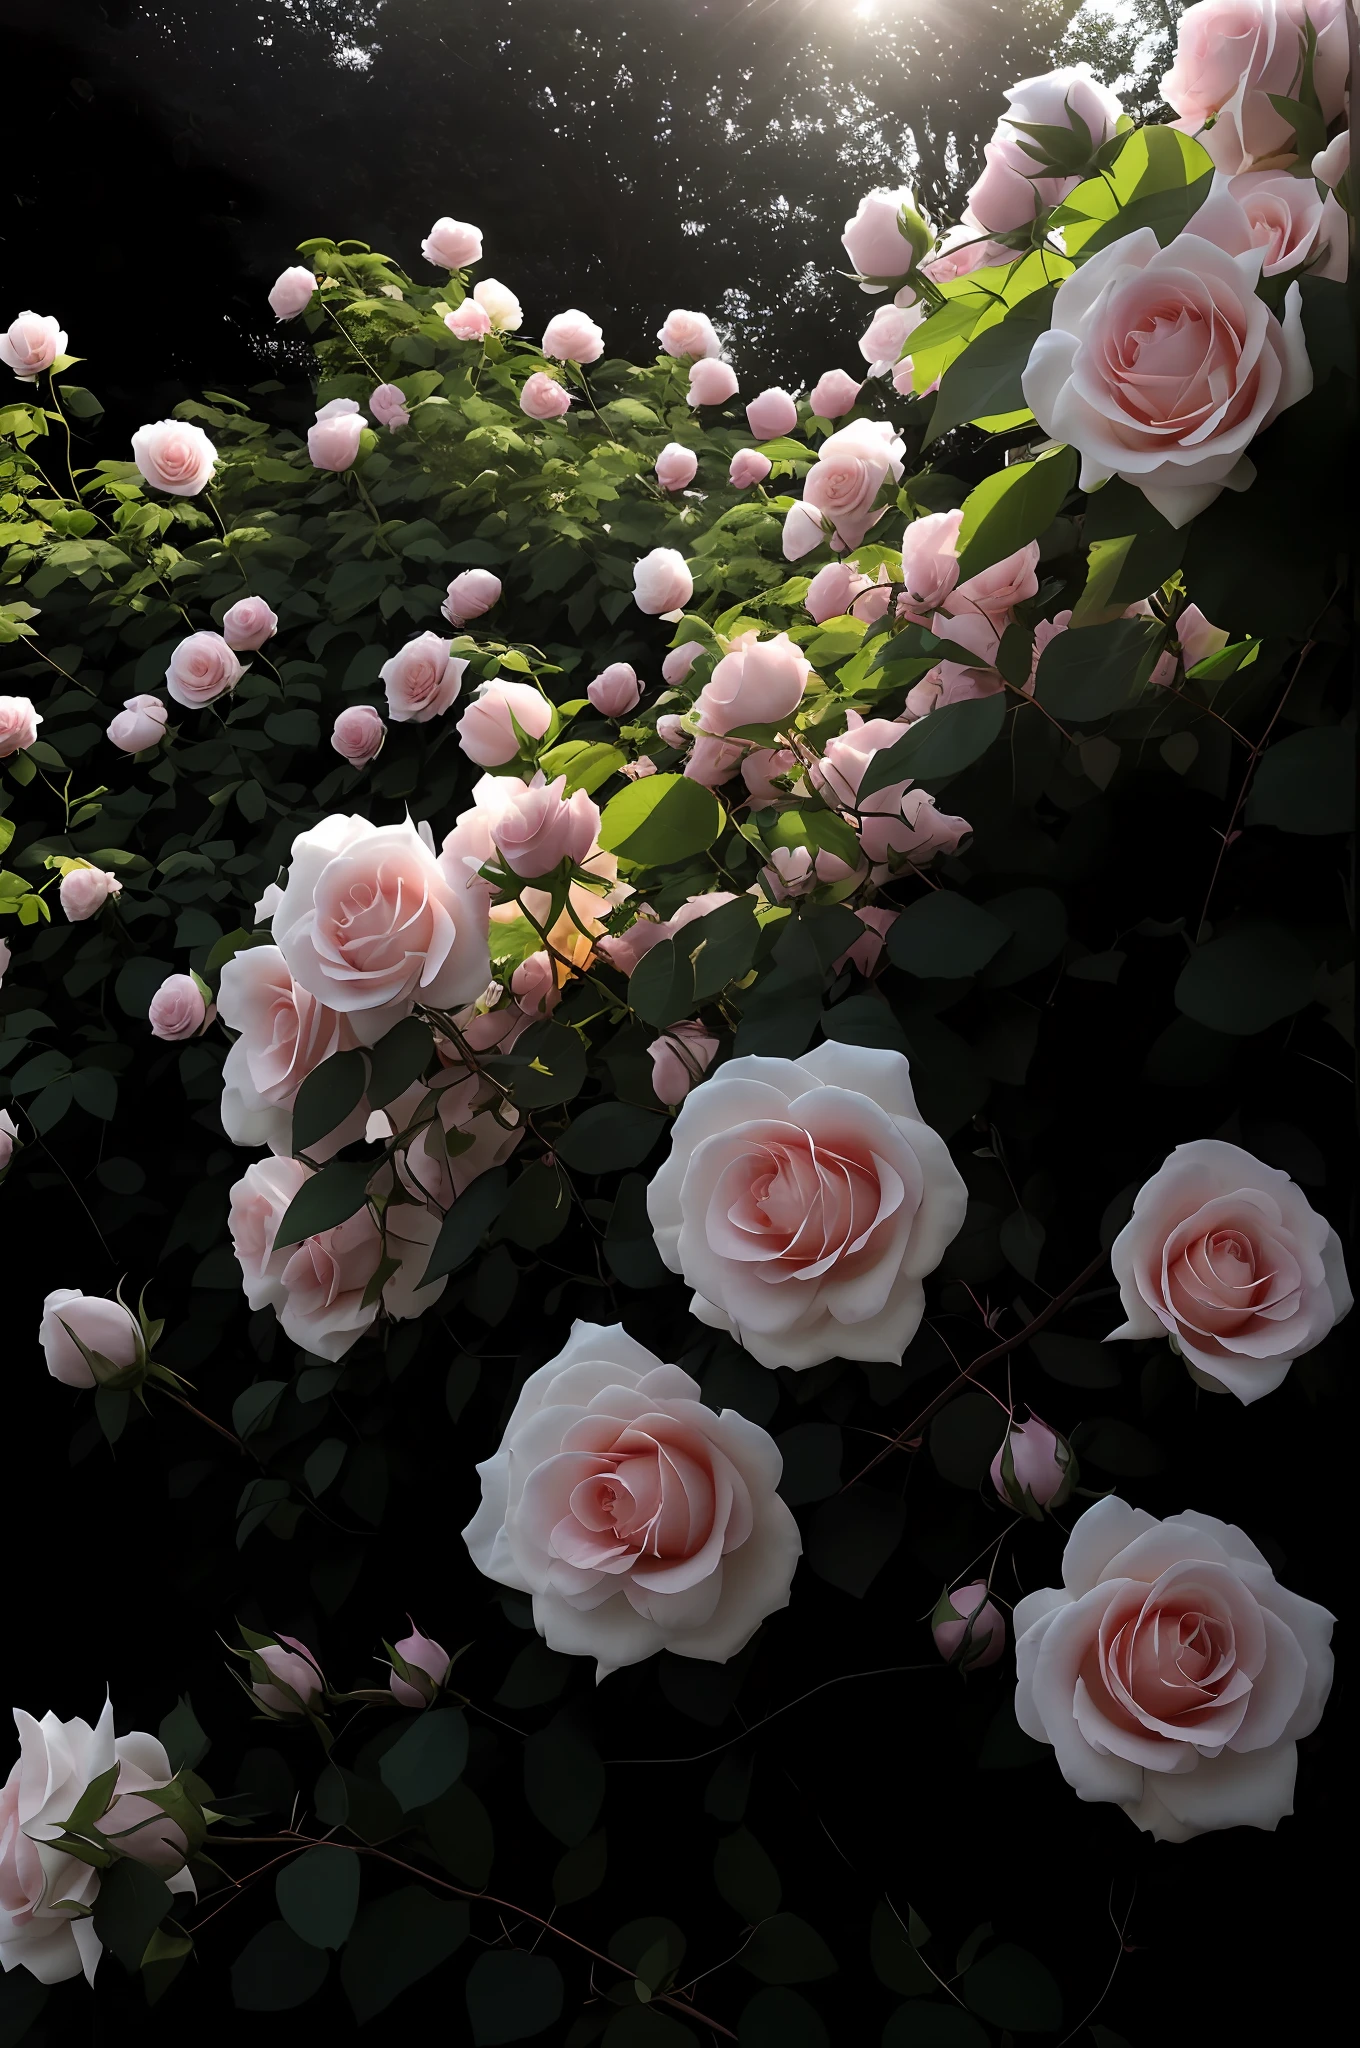 there are many pink and white розы growing on a bush, розы in cinematic light, Сад роз, огромные цветы, красивые цветы growing, ежевика, розы, Красивая эстетика, Красивые большие цветы, невероятно красивая, светло-розовые тона, с мягкими кустами, мягкое свечение, красивые цветы, полное цветение, цветы цветущие, много пионов, много цветов